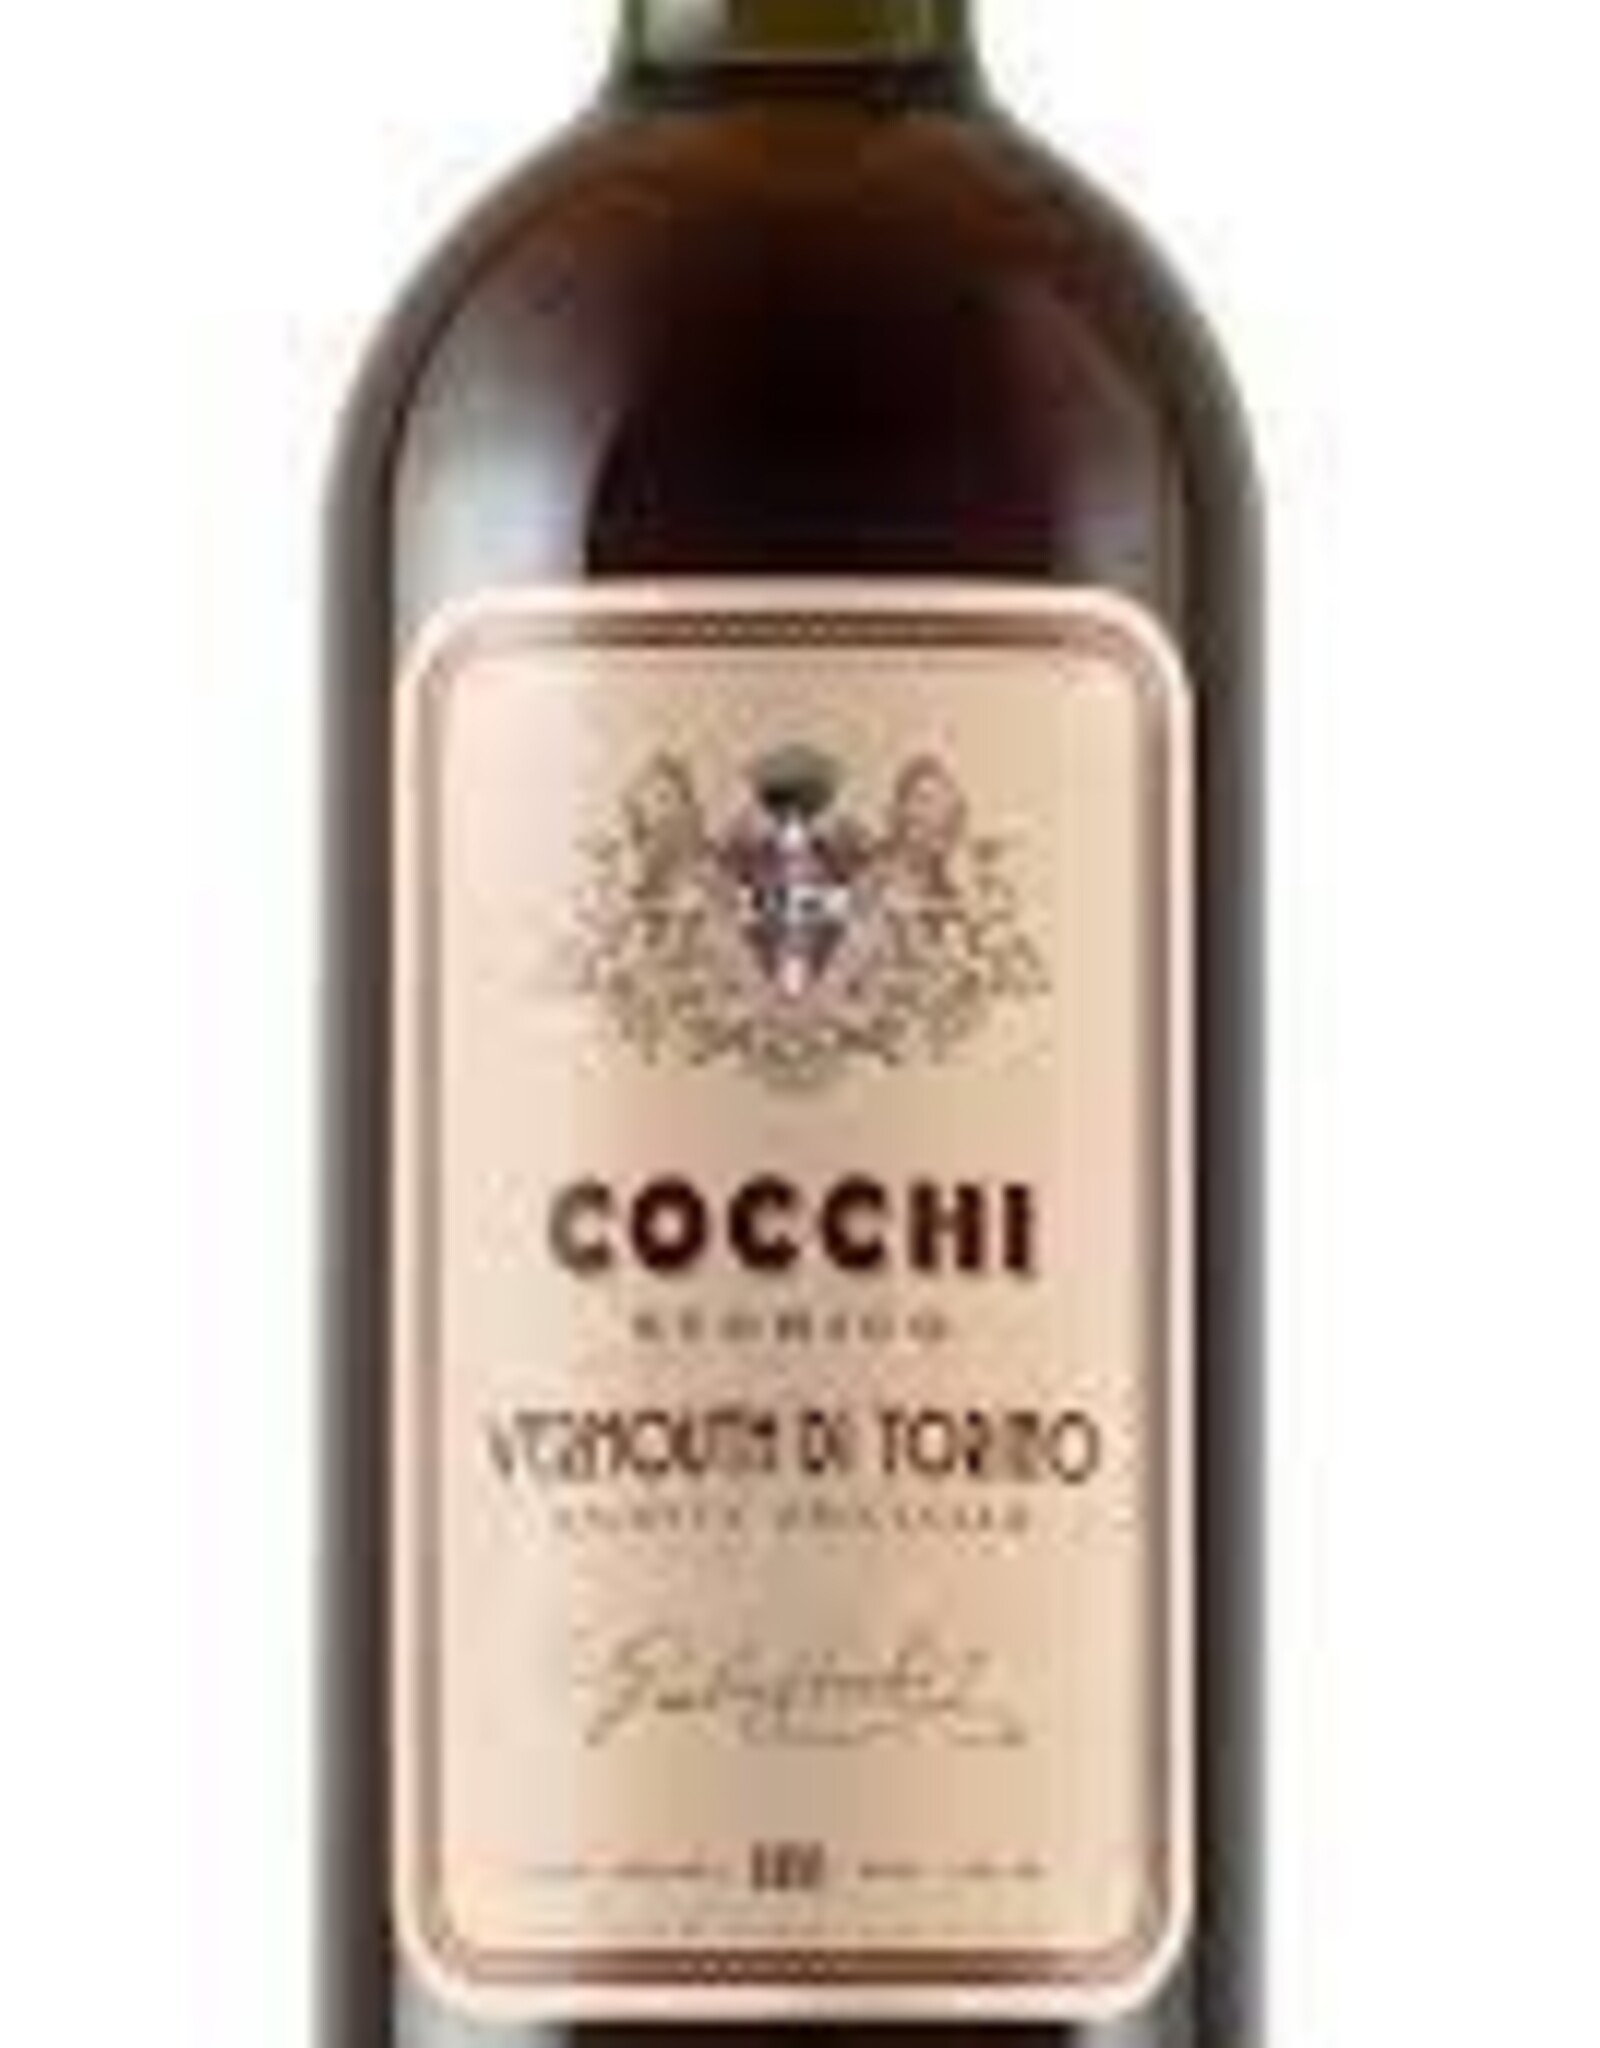 Cocchi Cocchi Vermouth di Torino 750ml